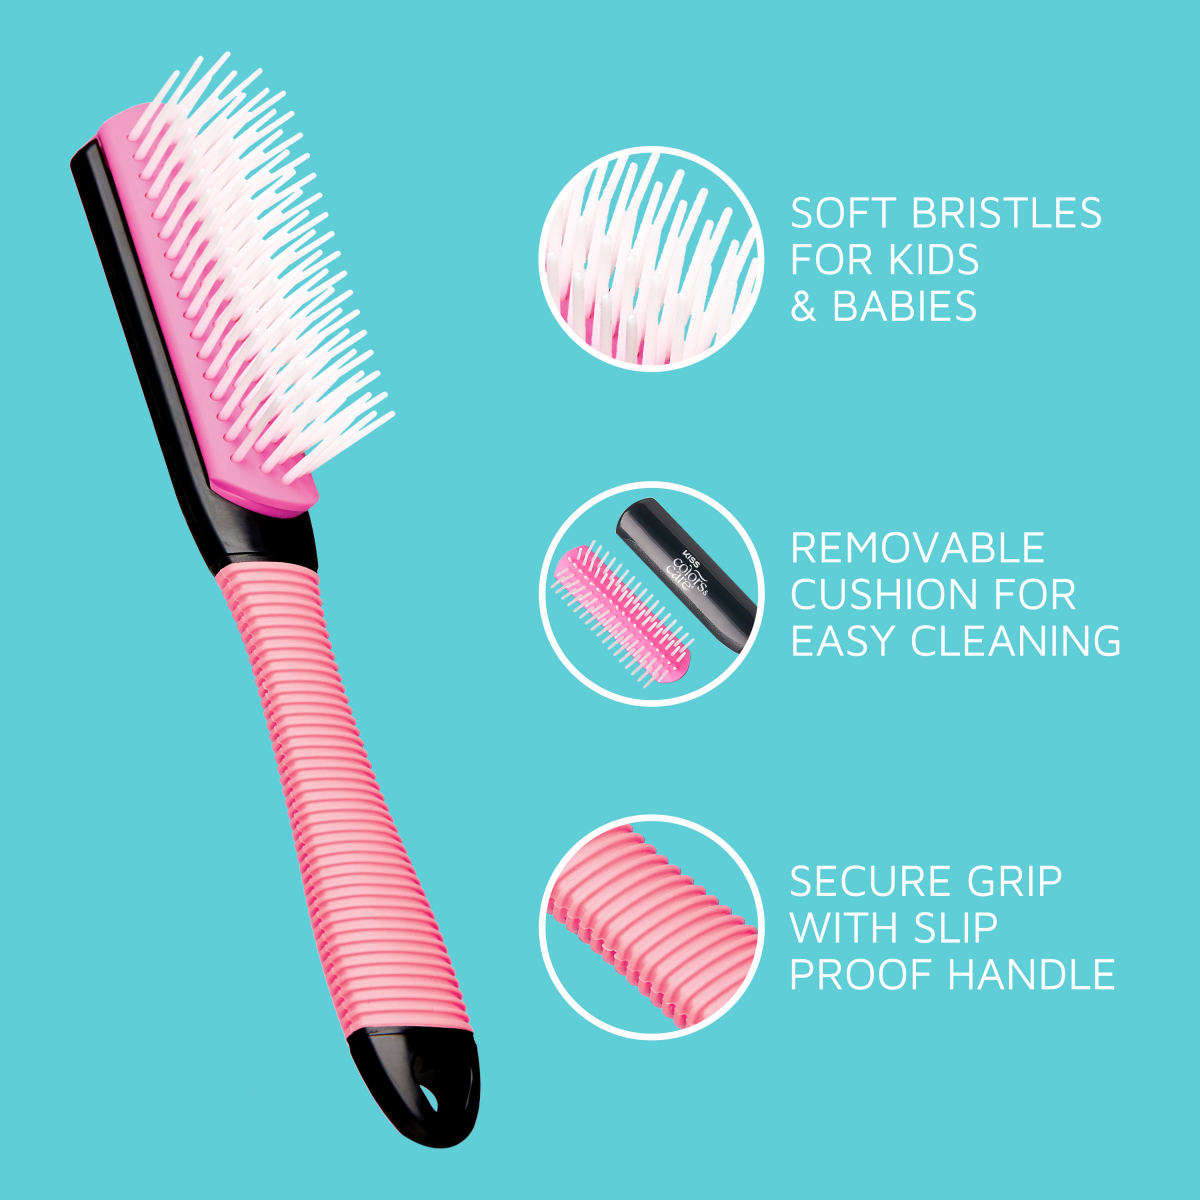 KISS Colors &amp; Care Mini Non-Slip Soft Bristle Detangling Brush - Pink